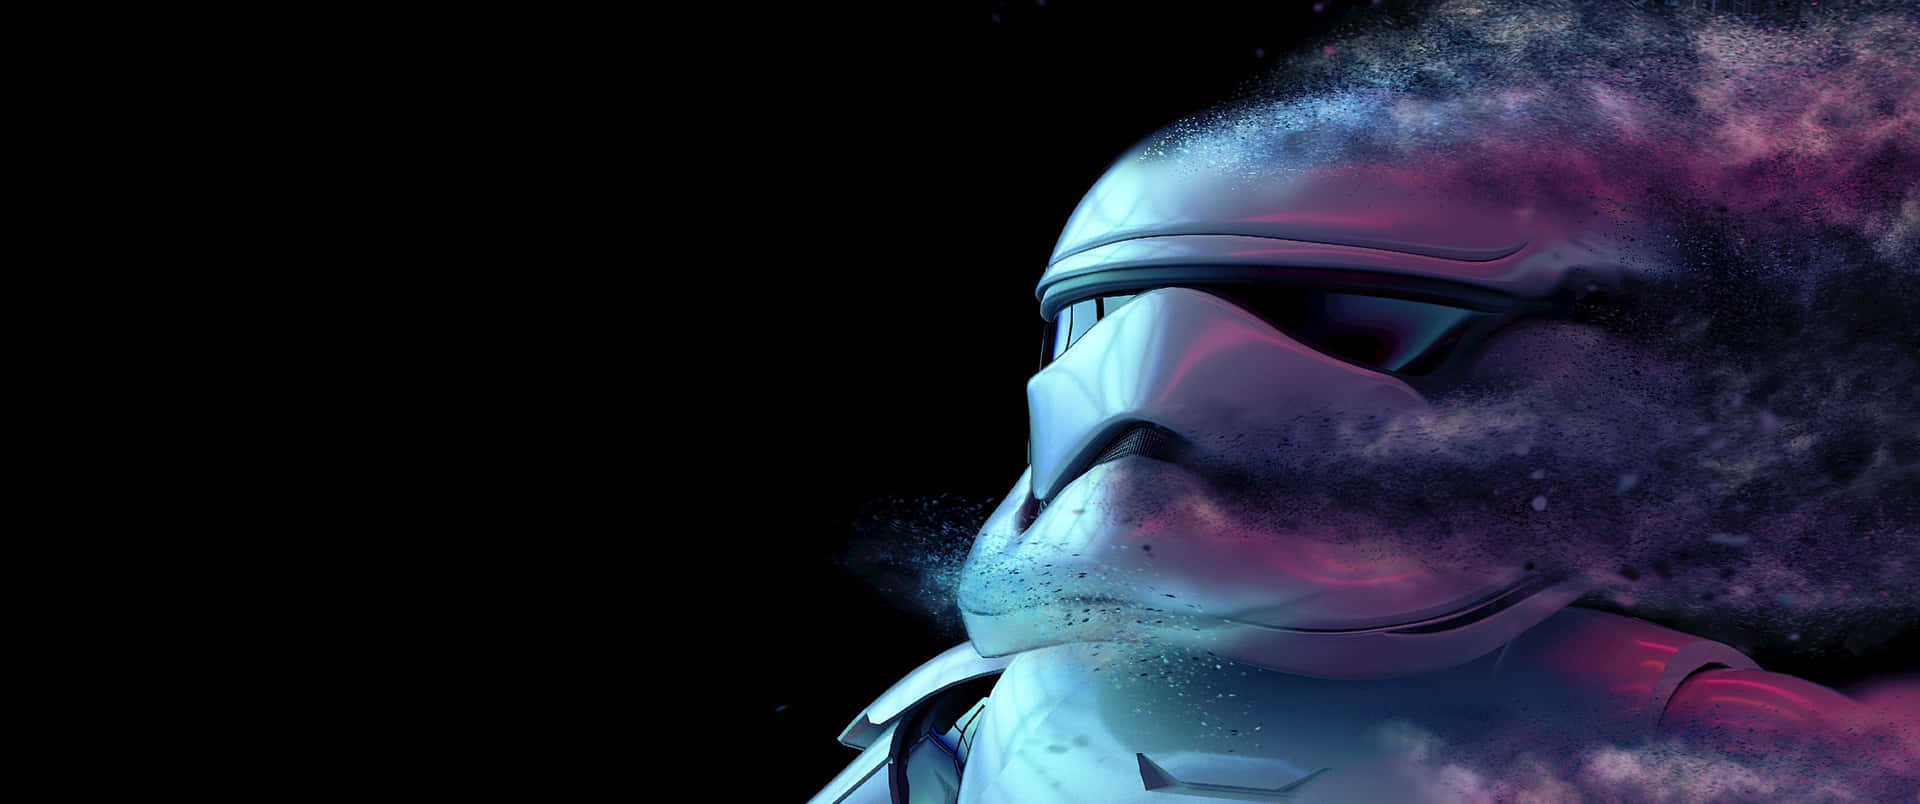 Star Wars Stormtrooper Cosmic Dust Ultra Wide Wallpaper